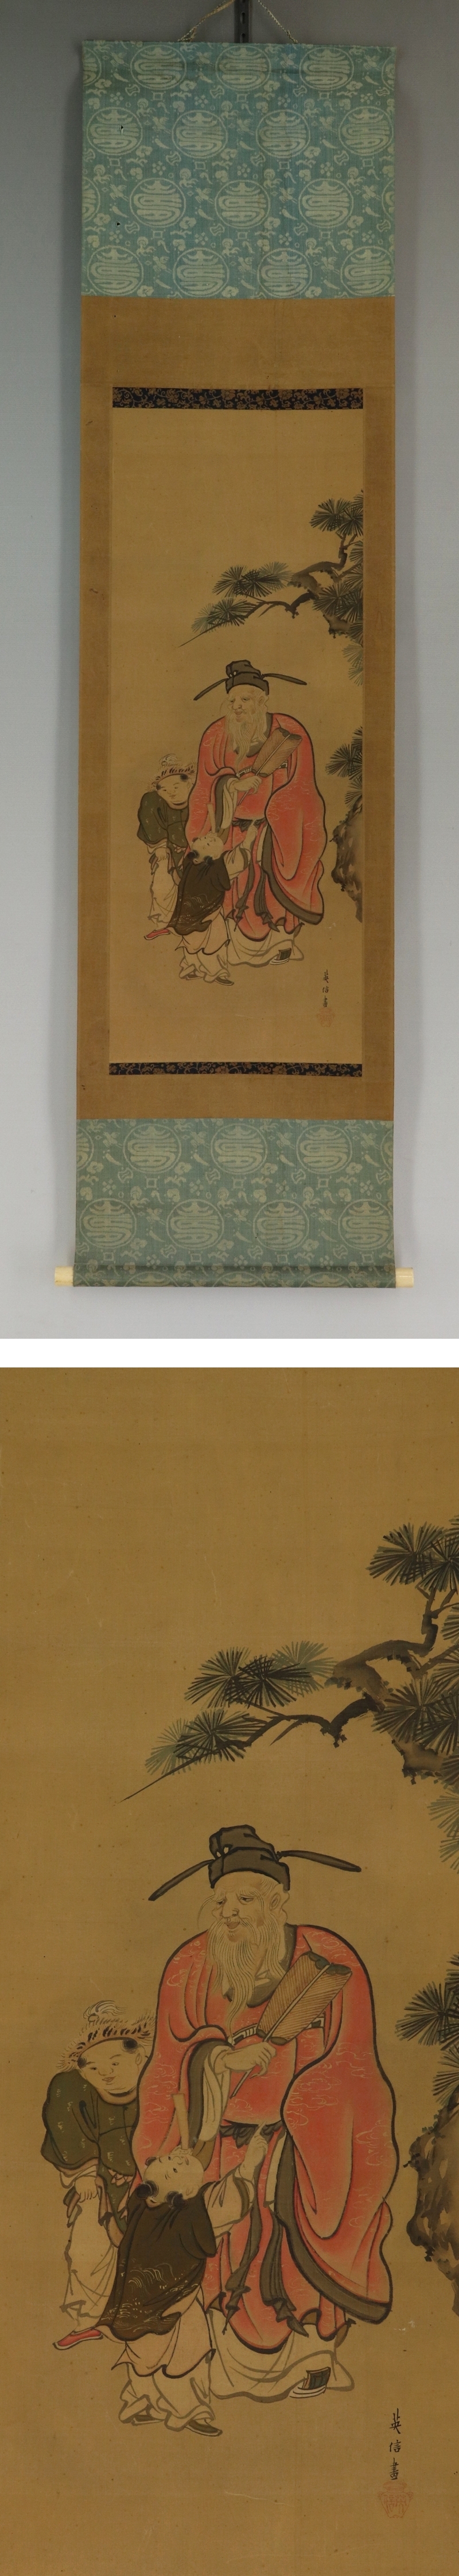 日本初売狩野英信◆絹本◆合箱◆掛軸 u04052 人物、菩薩